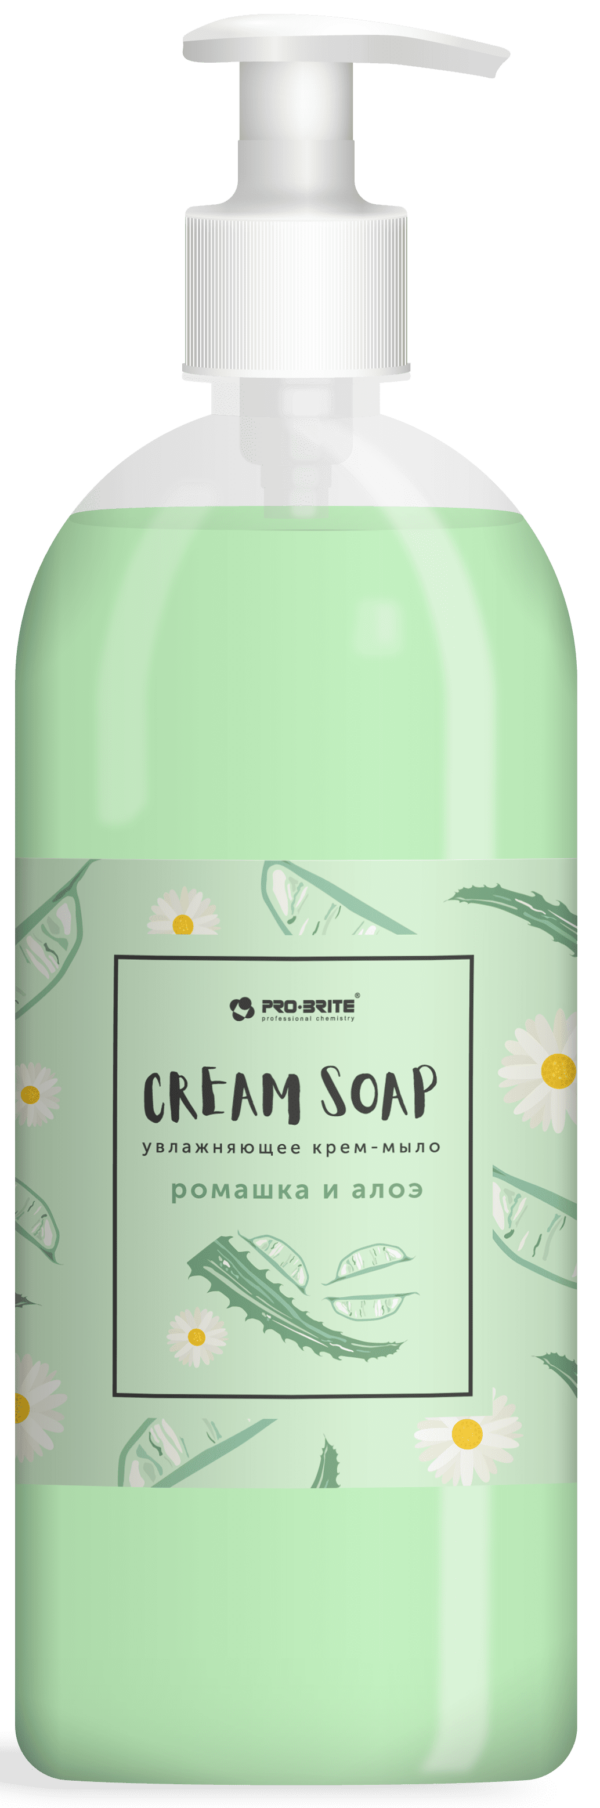 Крем-мыло жидкое PRO-BRITE Cream Soap Standard Ромашка и алоэ 1 л (1090-1) купить в сети строительных магазинов Мастак